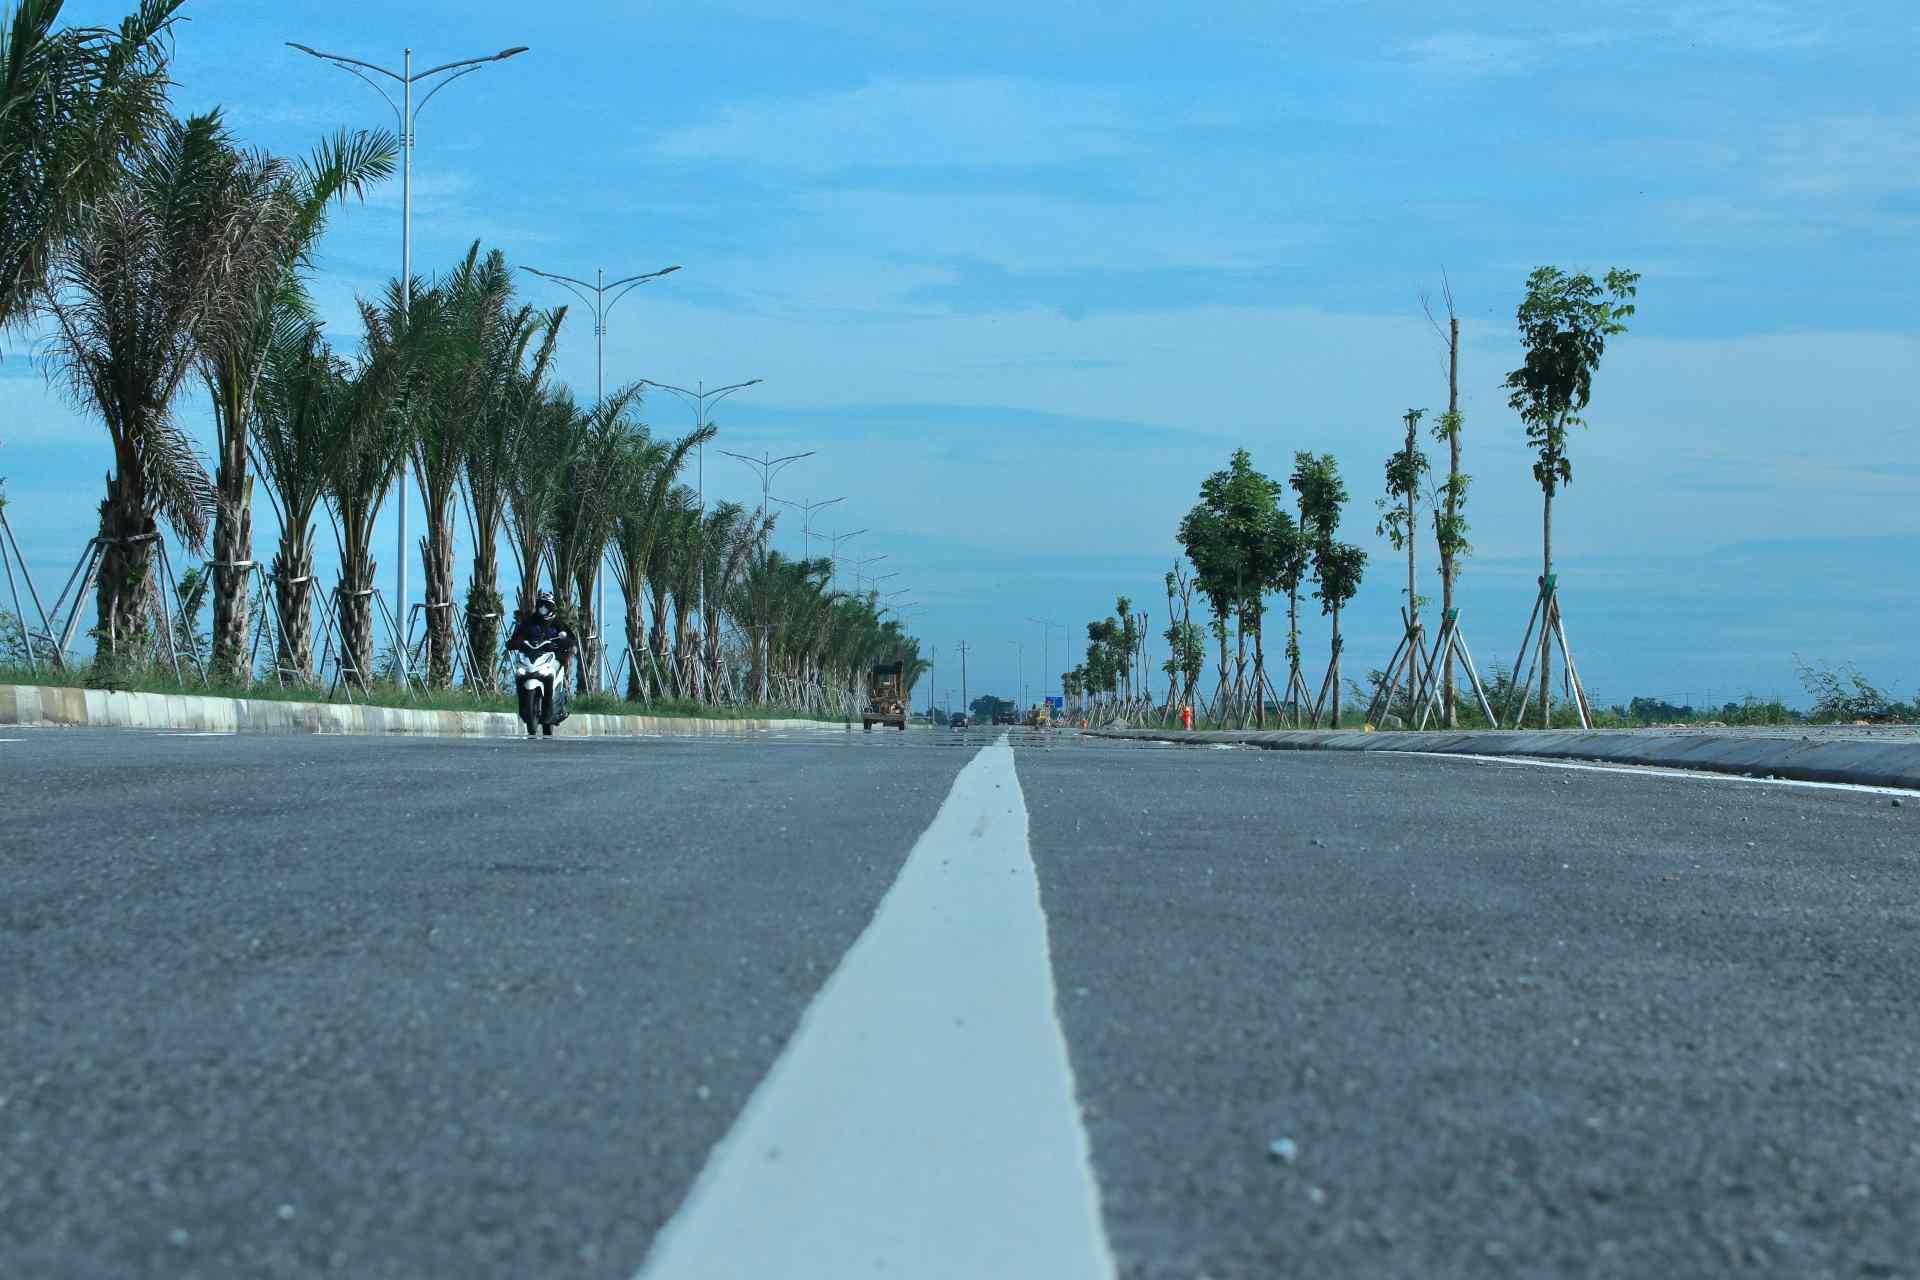 Được biết, tuyến đường có tổng chiều dài gần 4,2 km, điểm đầu giao với tỉnh lộ 10A tại Km 19+500 (cuối đường Thủy Dương - Thuận An), điểm cuối tuyến giao với quốc lộ 49A tại Km 5+00. 